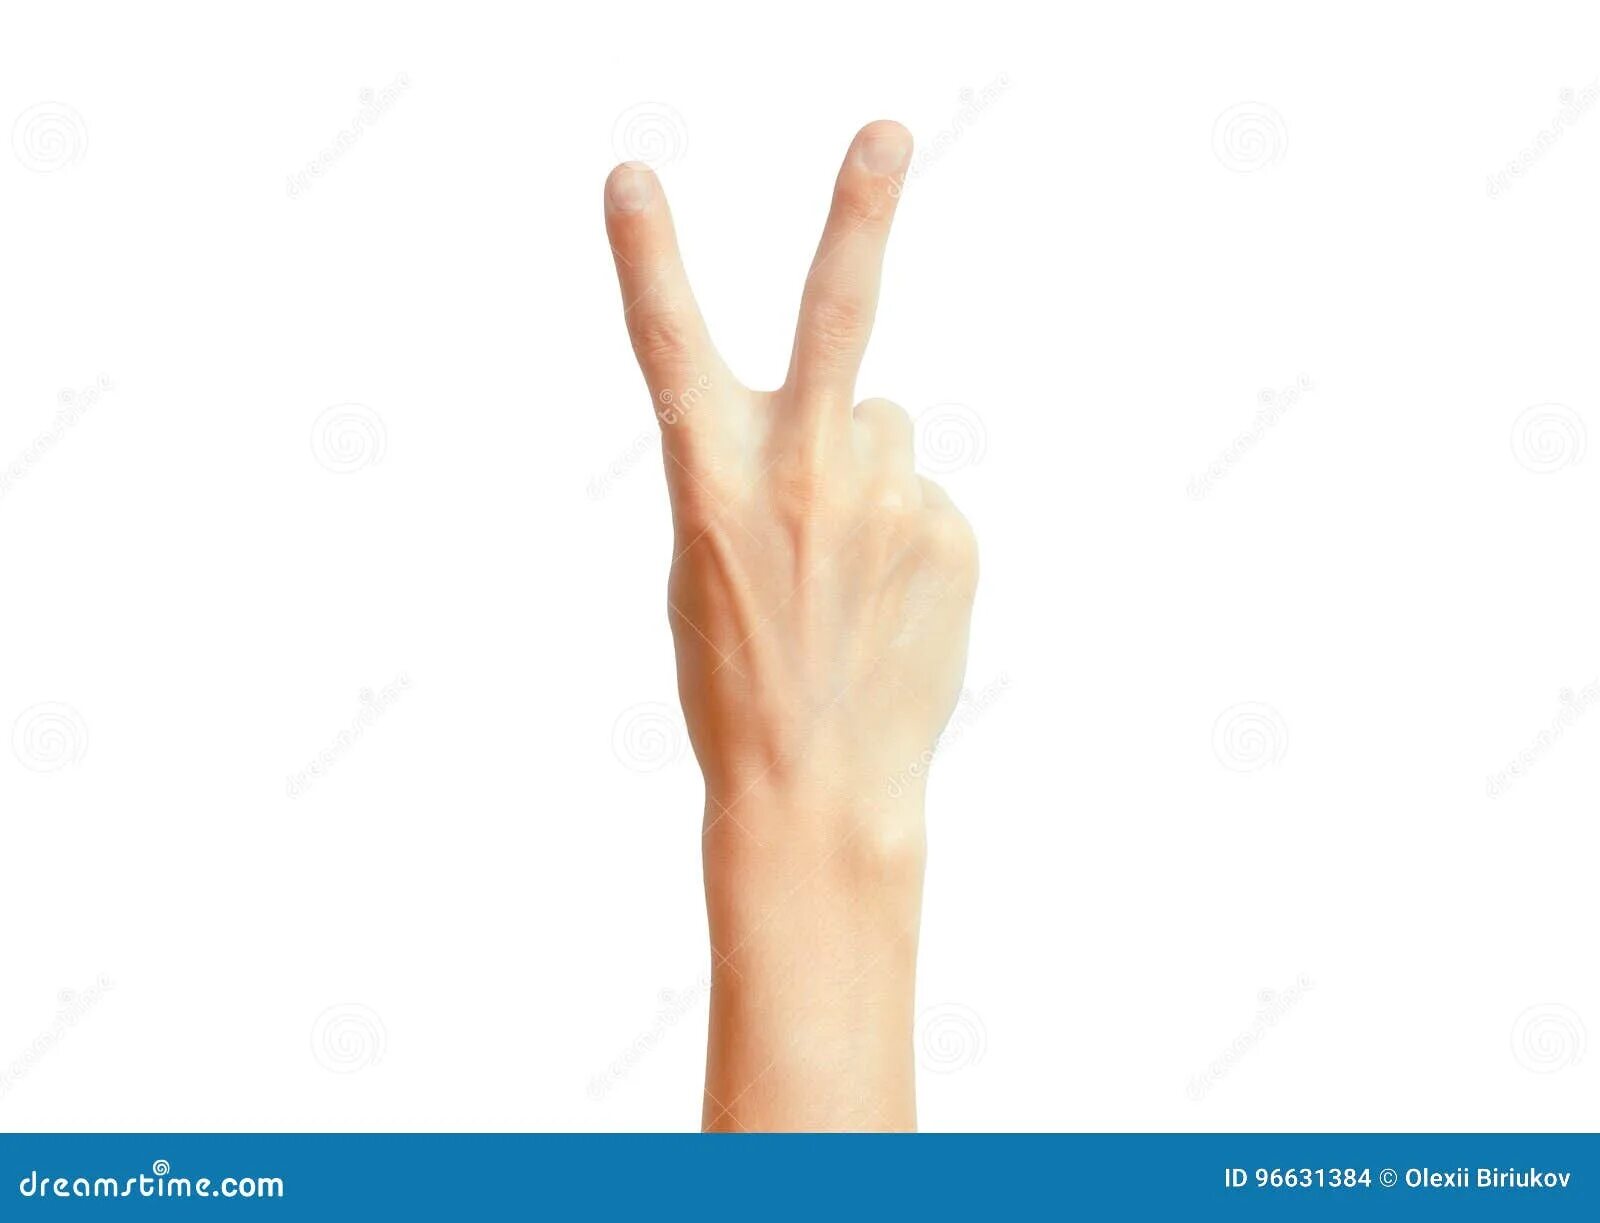 2 2 четыре пальца. Два пальца. Женская рука показывает два пальца. Жест мир пальцами.